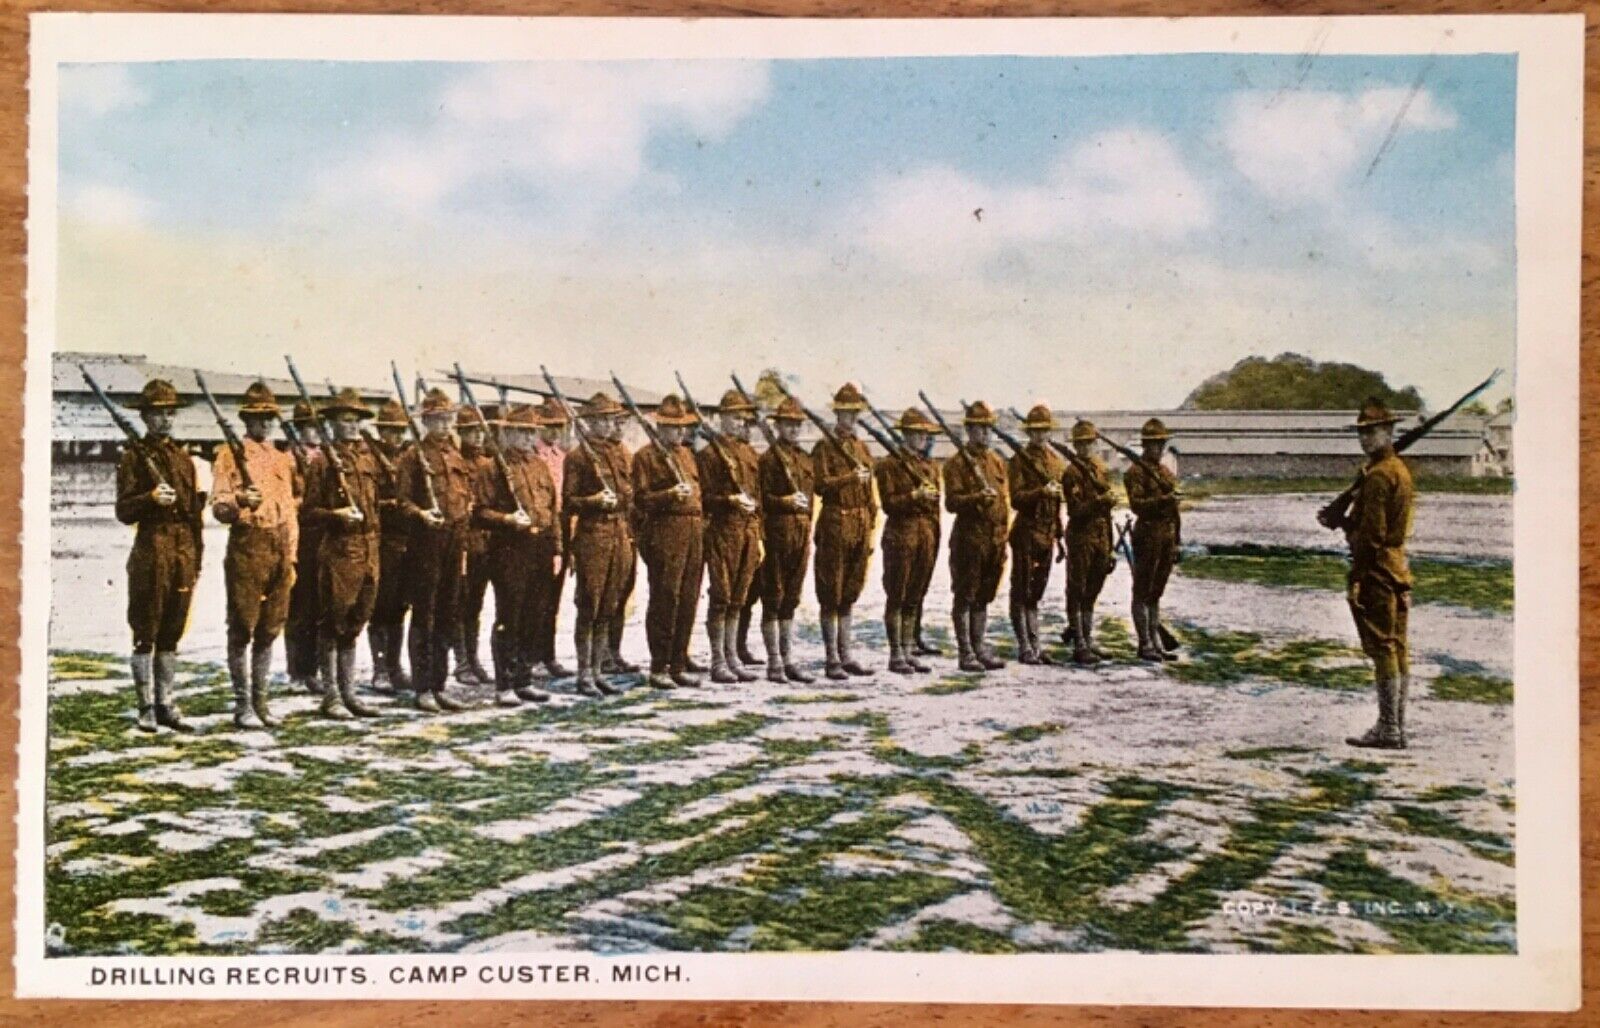 BATTLE CREEK MI, 1918 WWI ERA POSTCARD, CAMP CUSTER,  ARMY - DRILLING RECRUITS